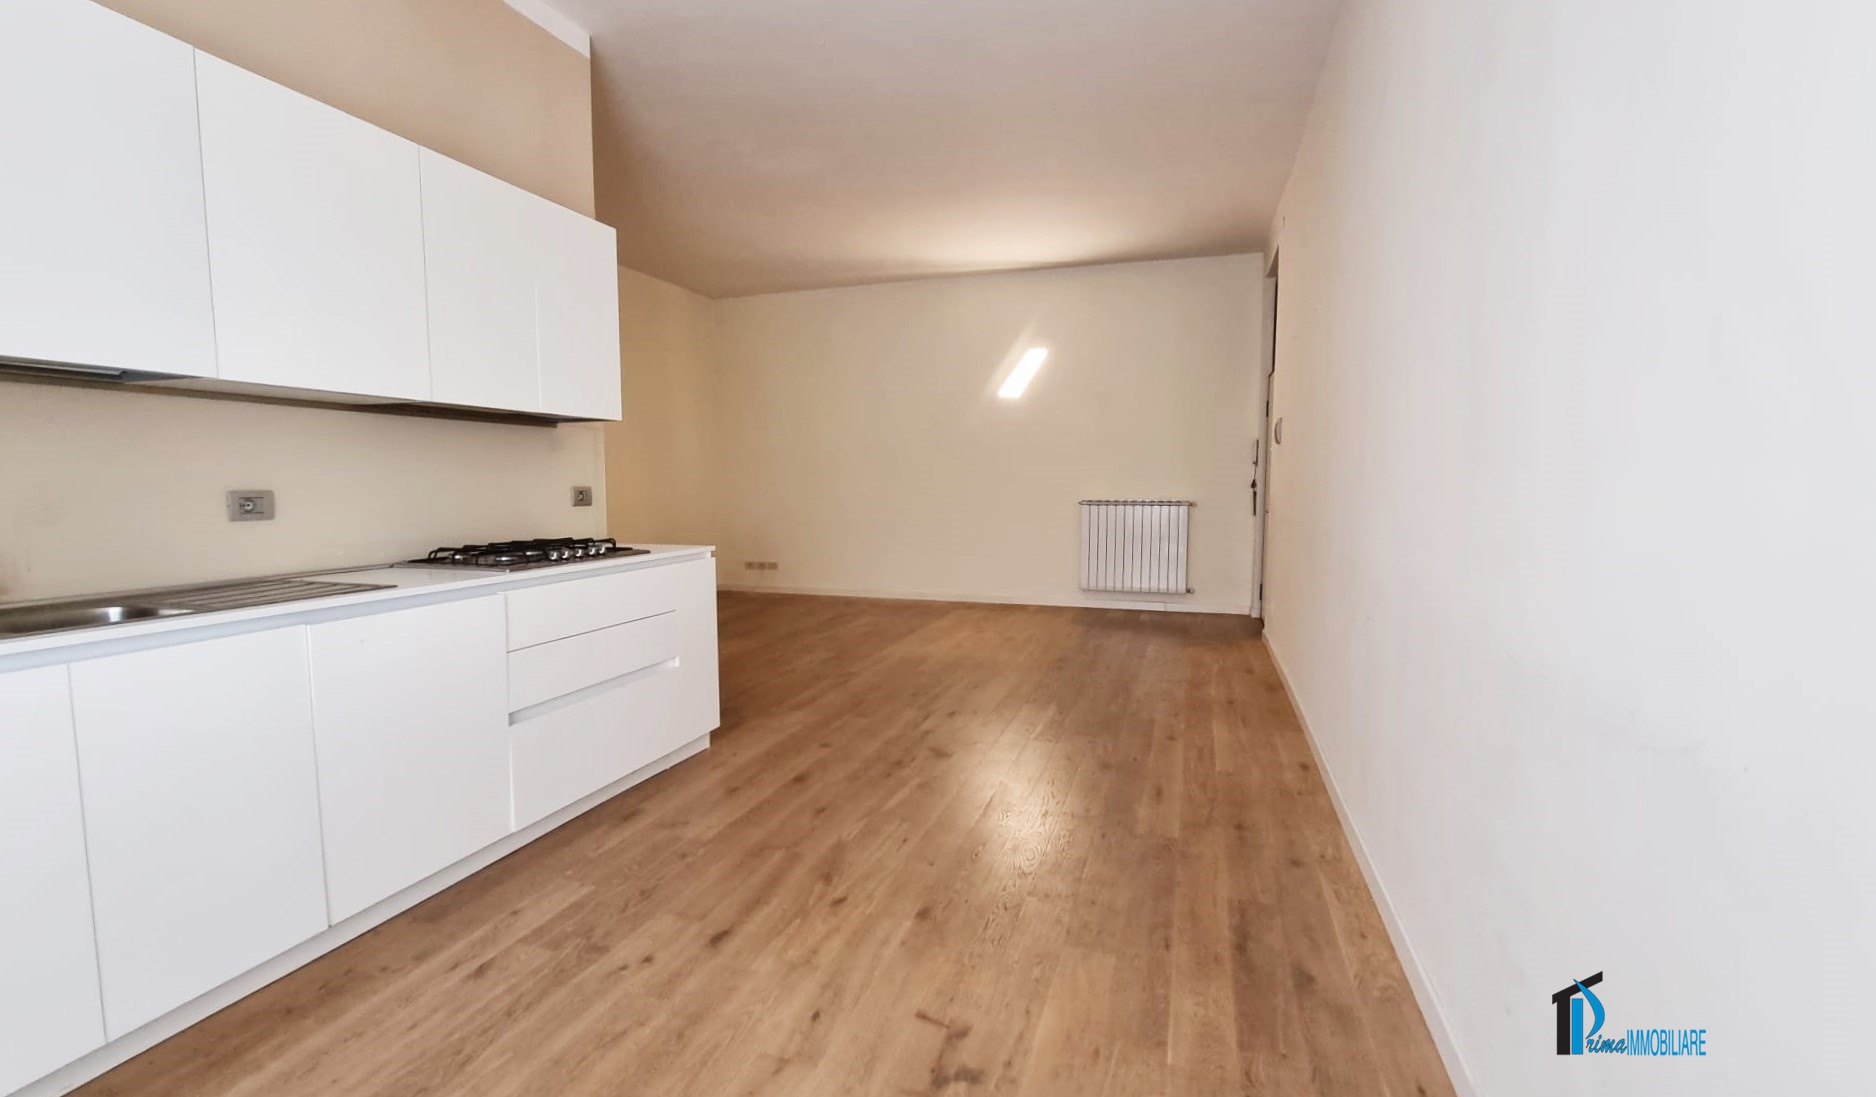 Appartamento in vendita a Terni, 3 locali, prezzo € 120.000 | PortaleAgenzieImmobiliari.it